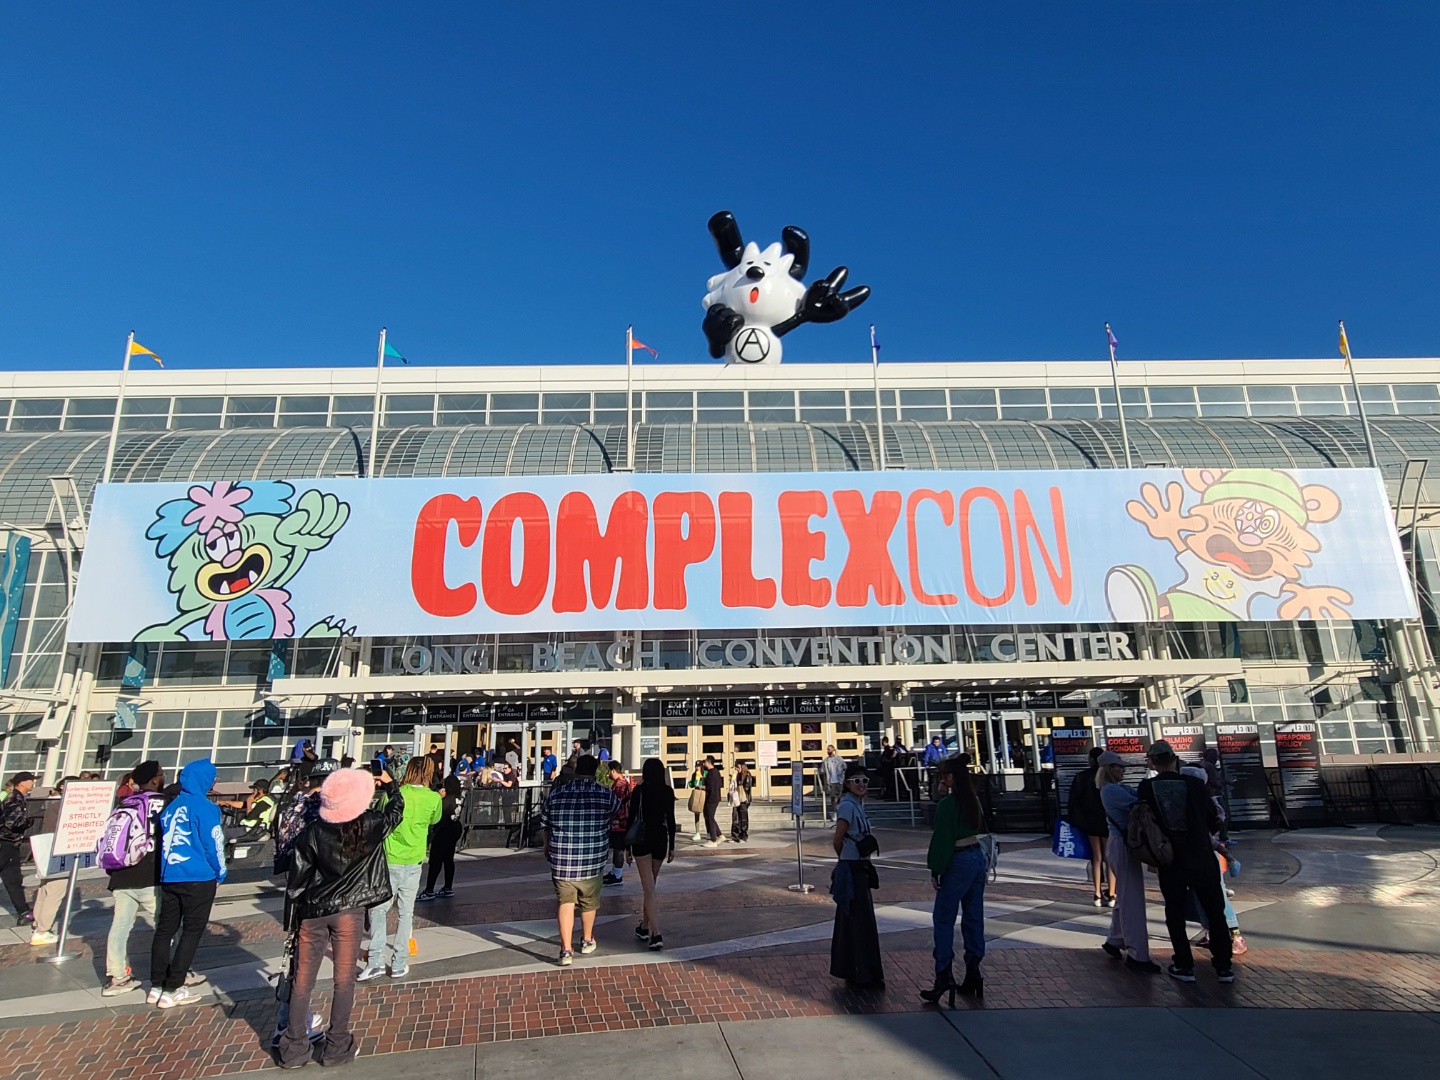 세계 최대 아트 컬쳐 이벤트 ComplexCon 2022 방문기 |</br>Full Recap of ComplexCon 2022! | 01